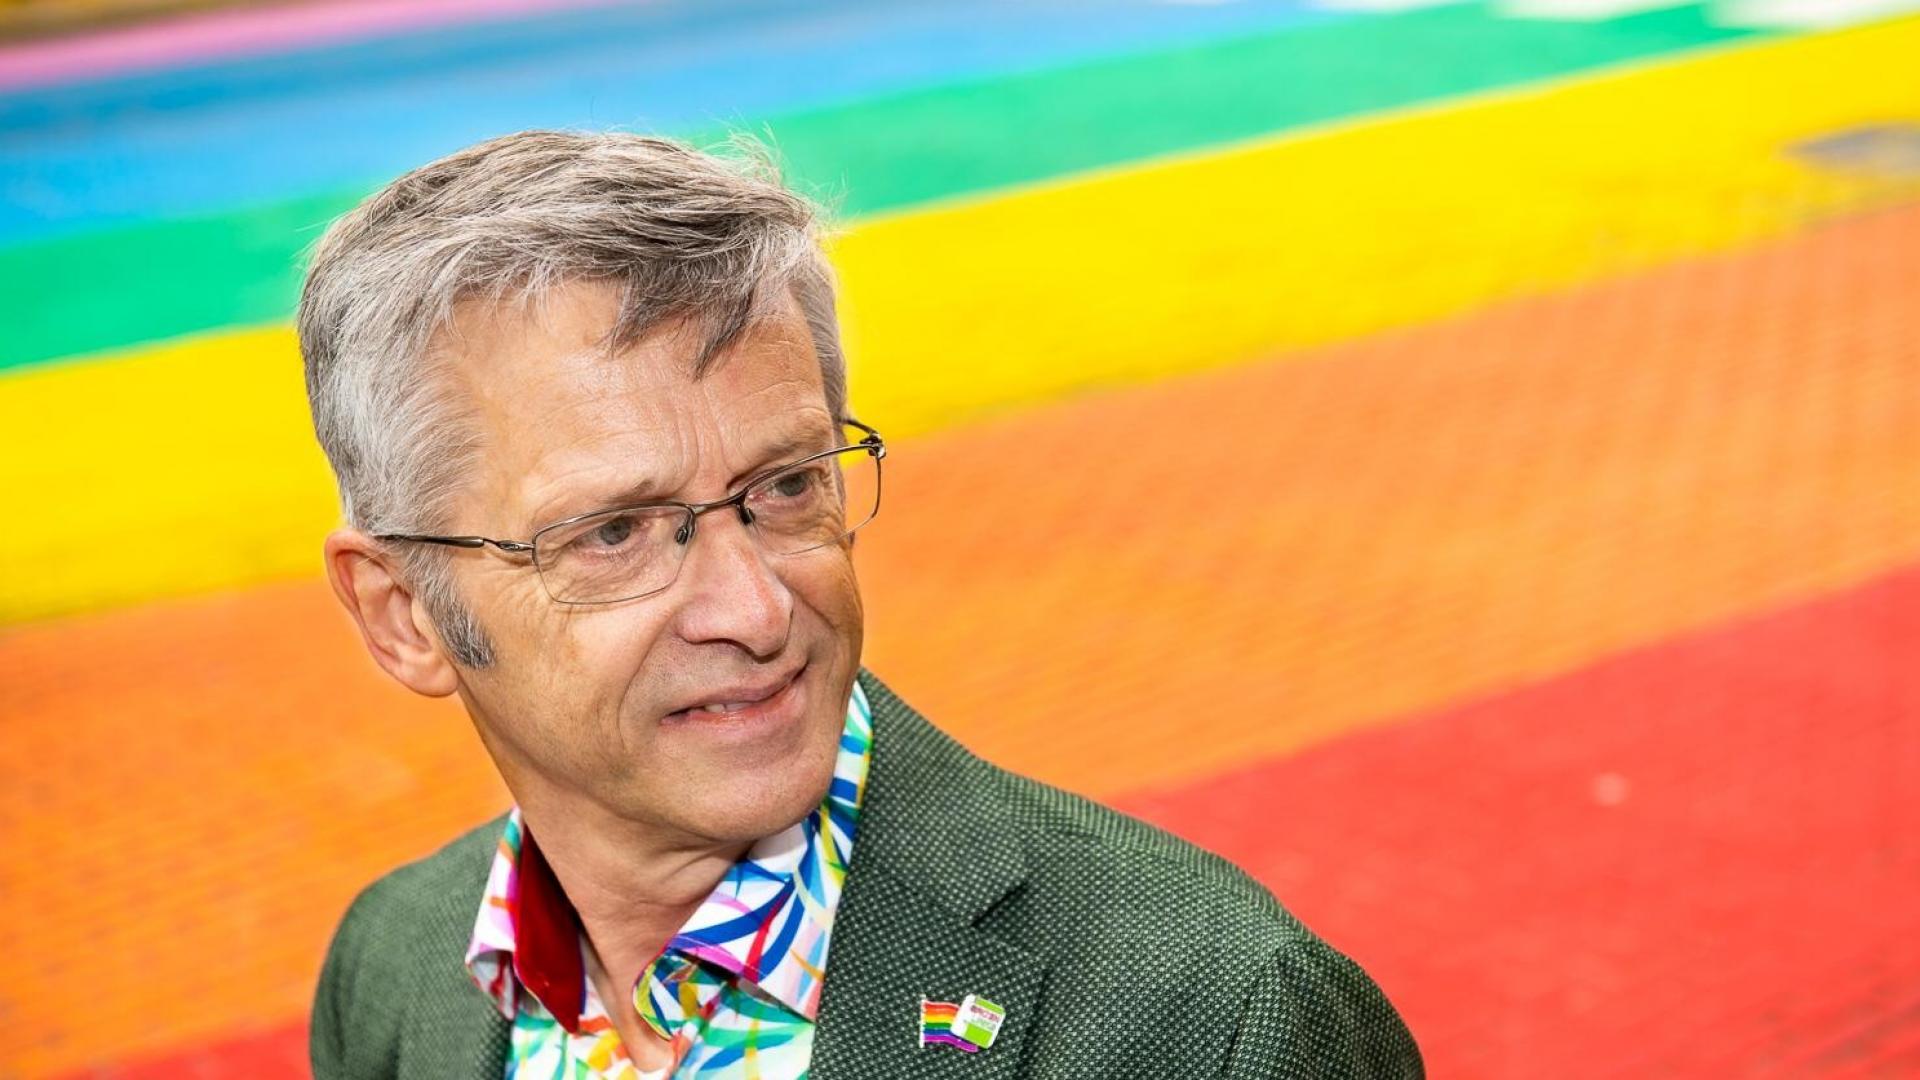 Foto van Henk Nijmeijer op een "gaybrapad", een zebrapad in de kleuren van de regenboog.